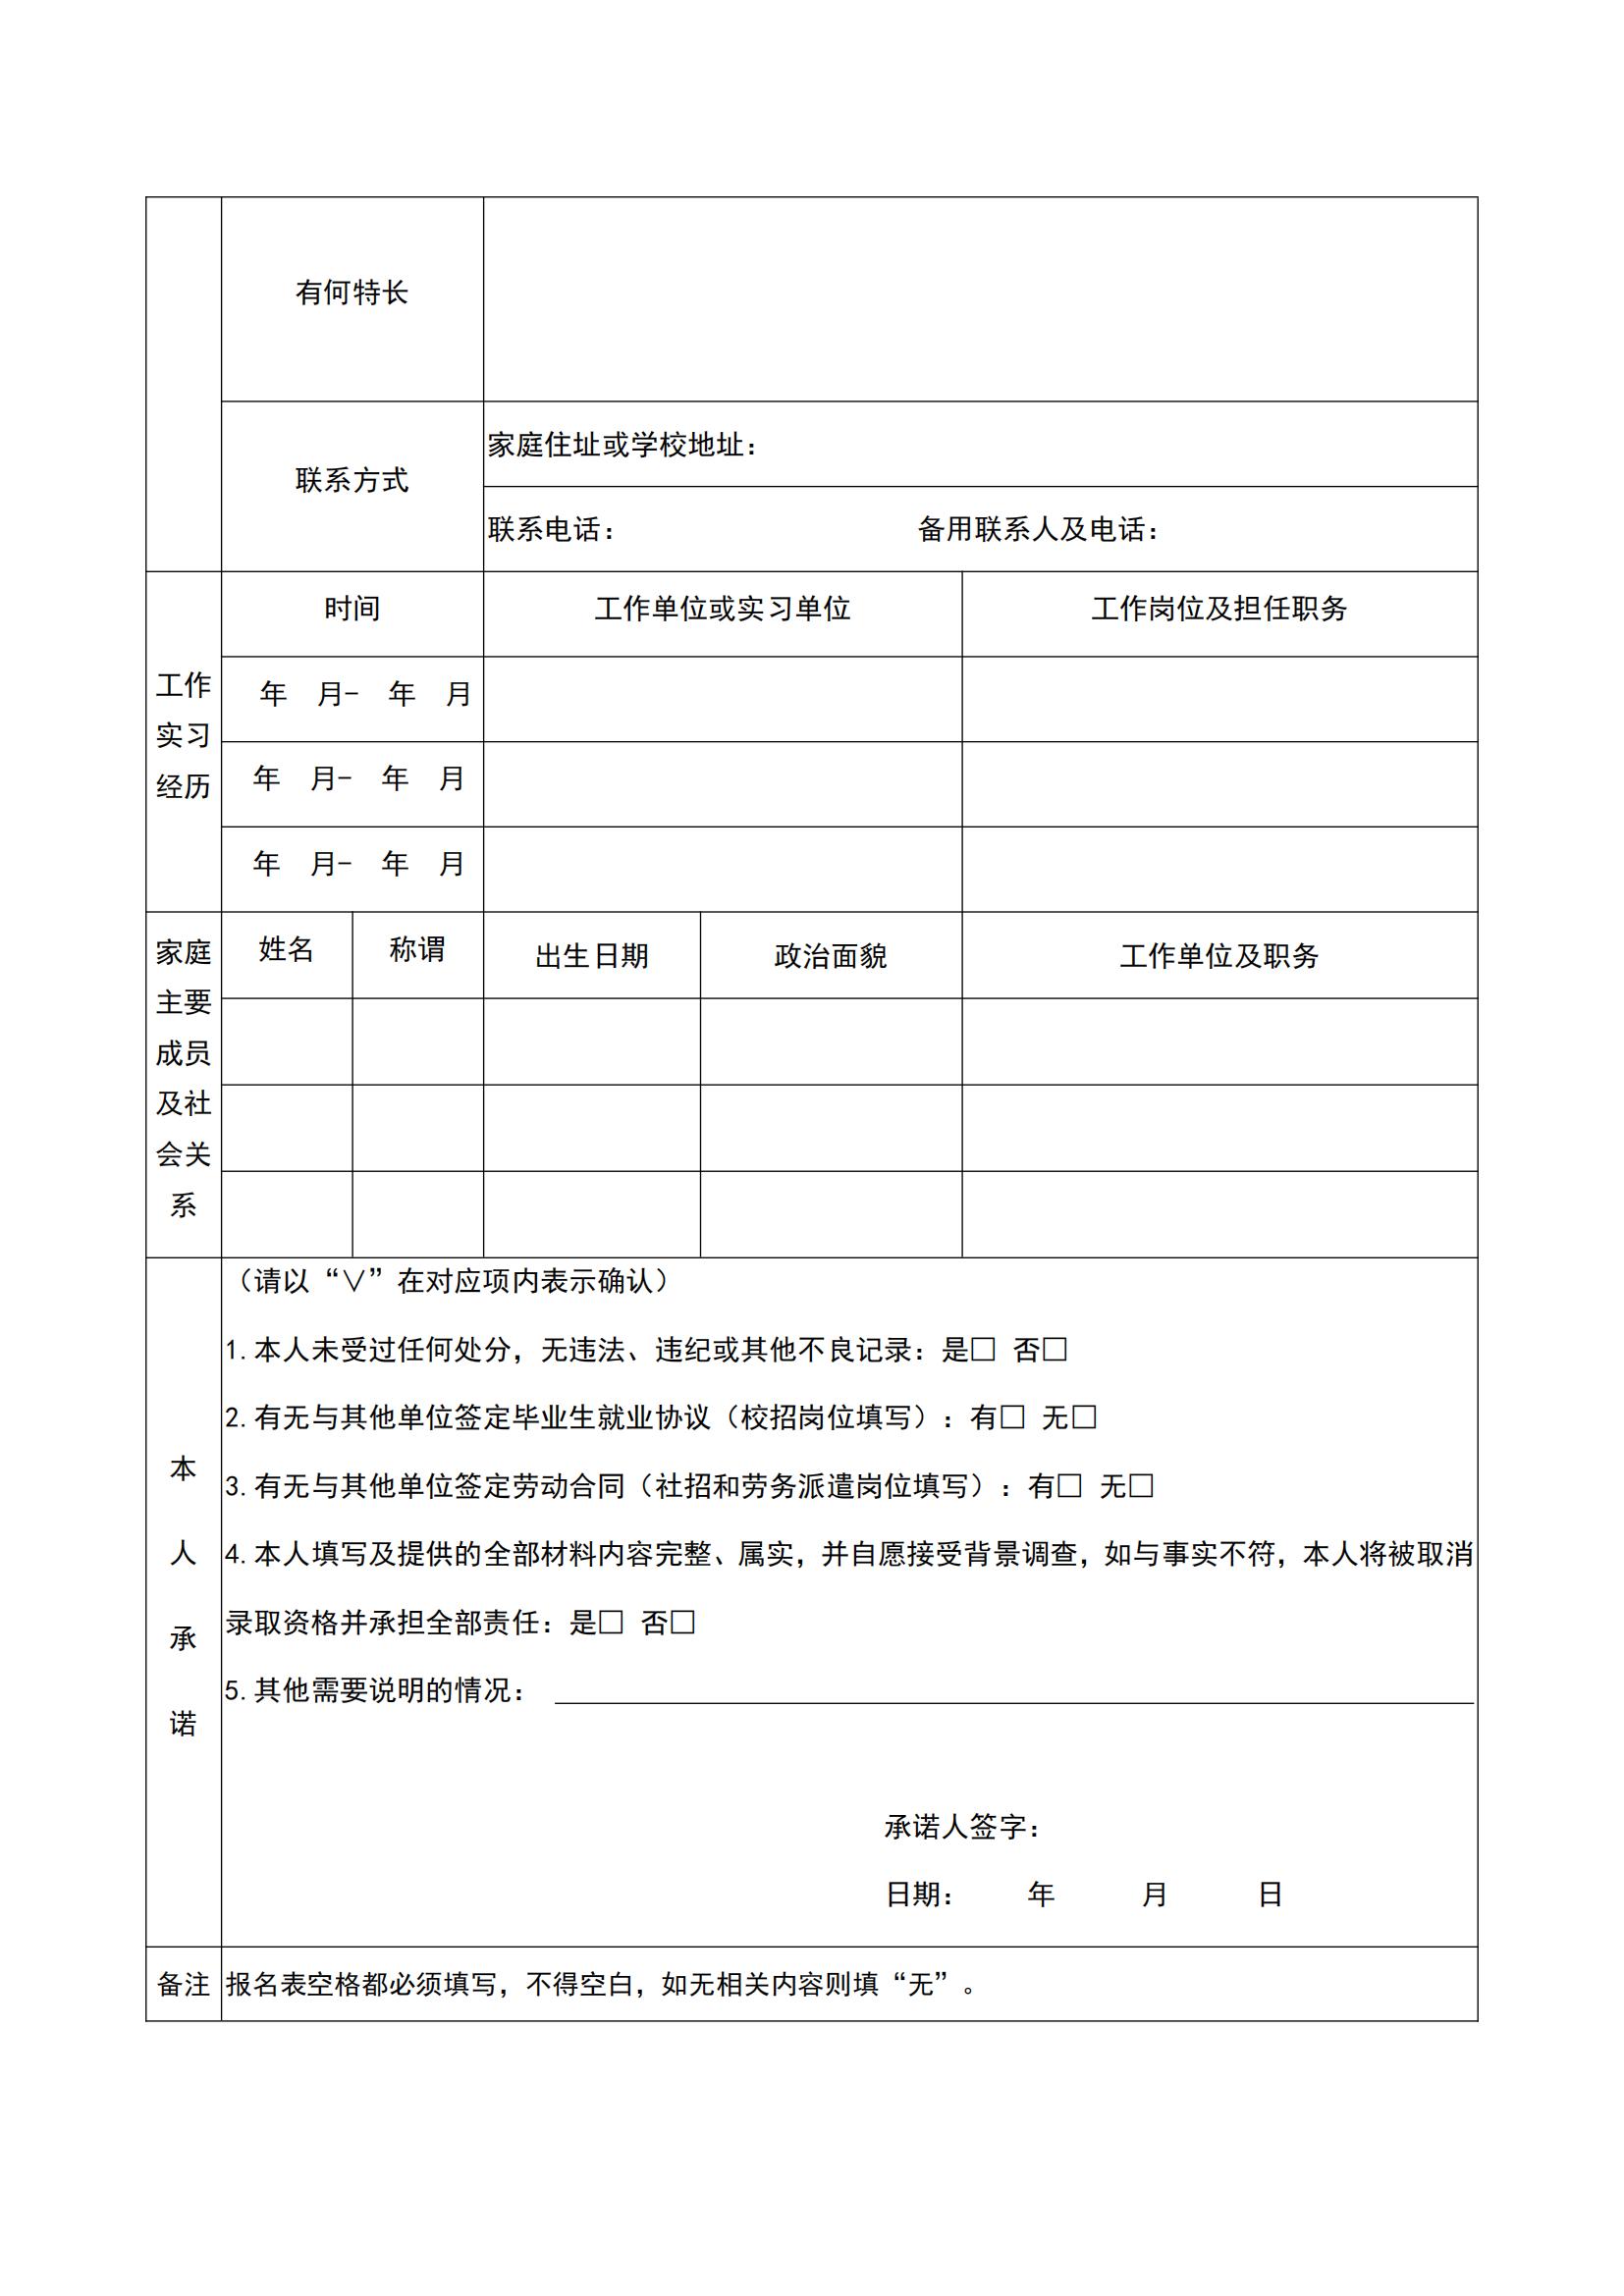 云南省水利水电勘测设计院有限公司报名登记表_01.jpg